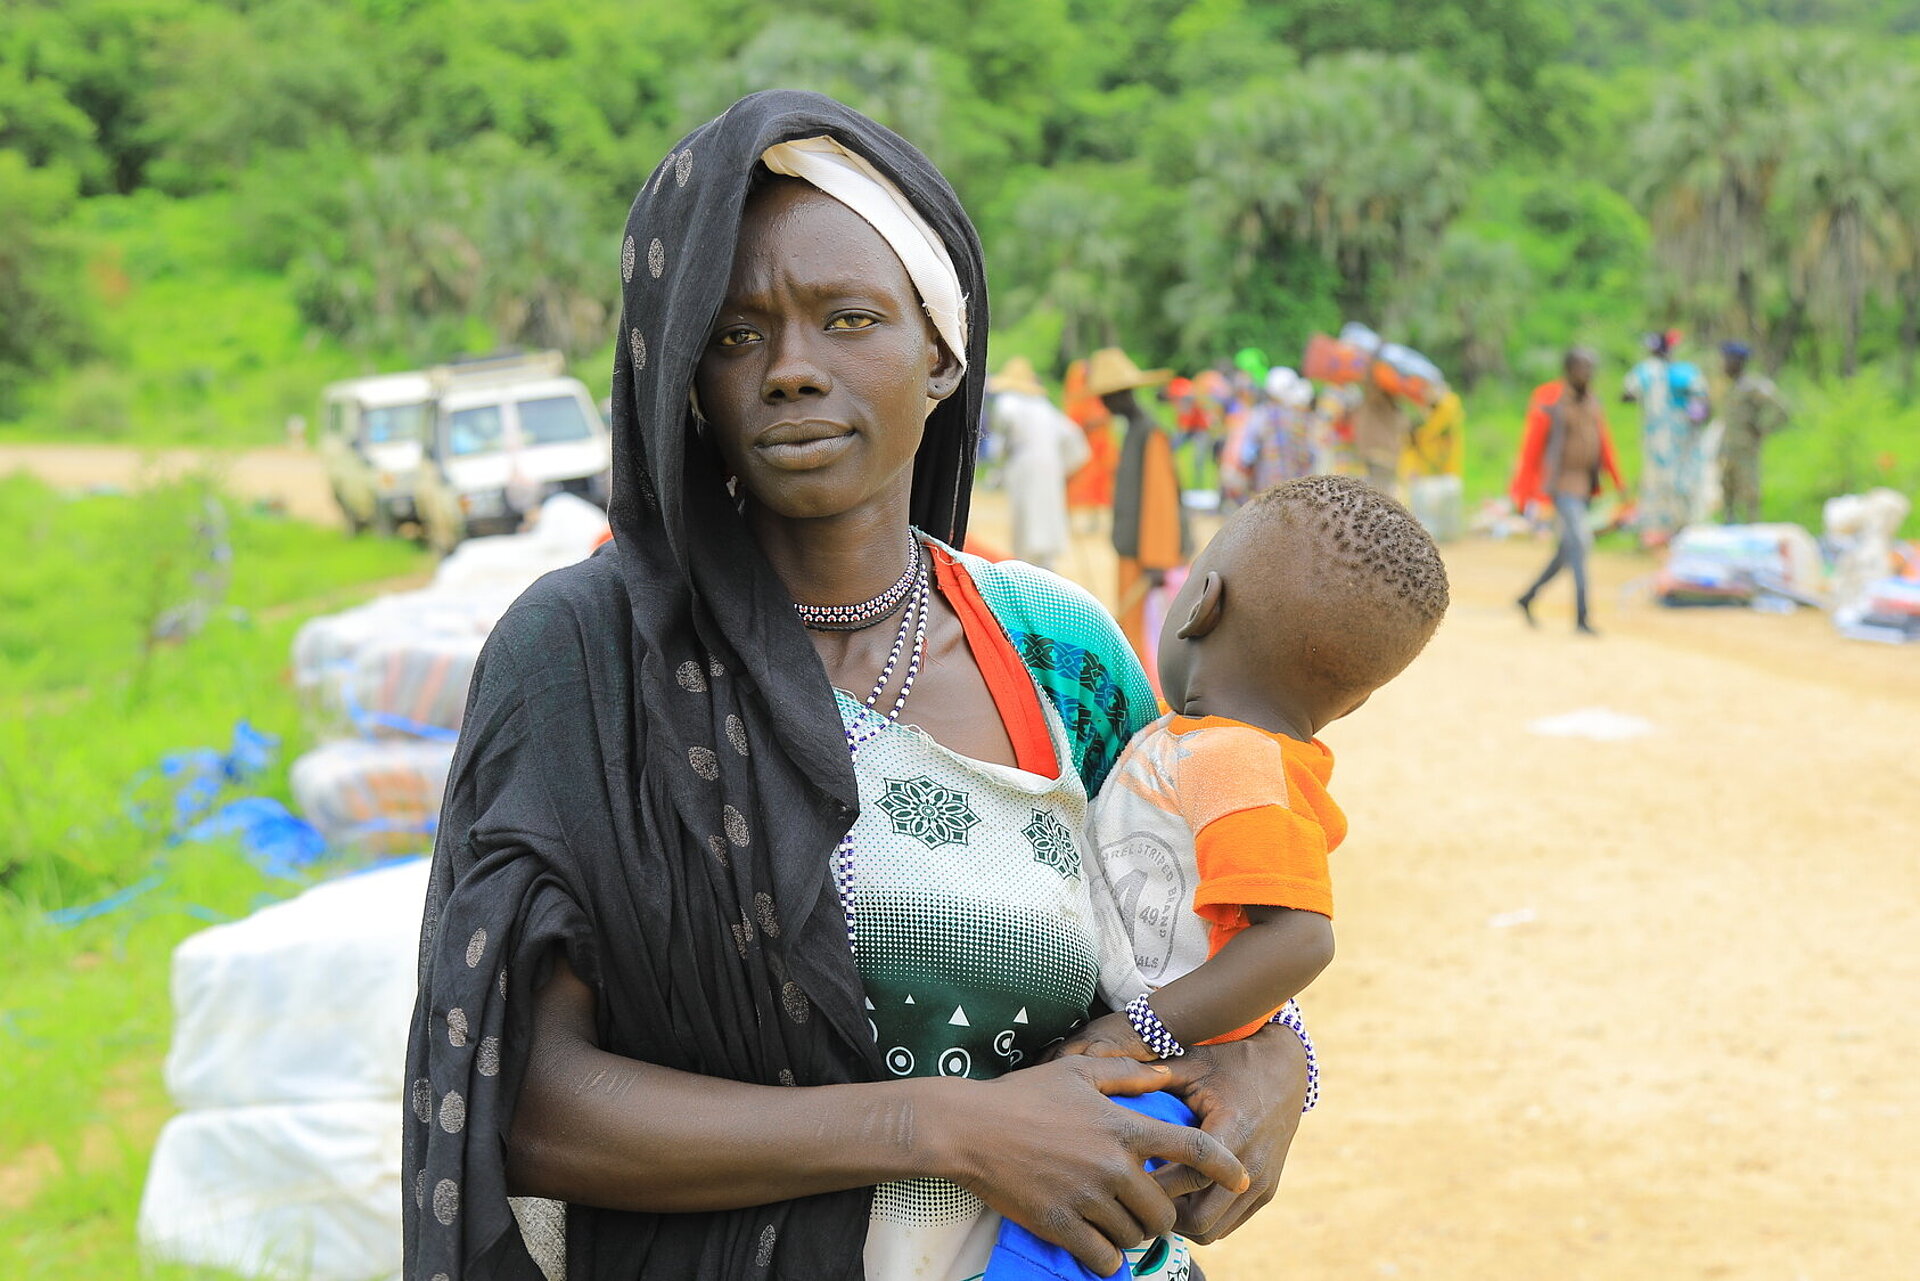 Verteilung von Hilfsgütern an Flüchtlinge aus dem Sudan durch das Äthiopische Rote Kreuz in den Orten Kurmuk und Guba an der Grenze zum Sudan. Frau mit ihrem kleinen Kind auf dem Arm